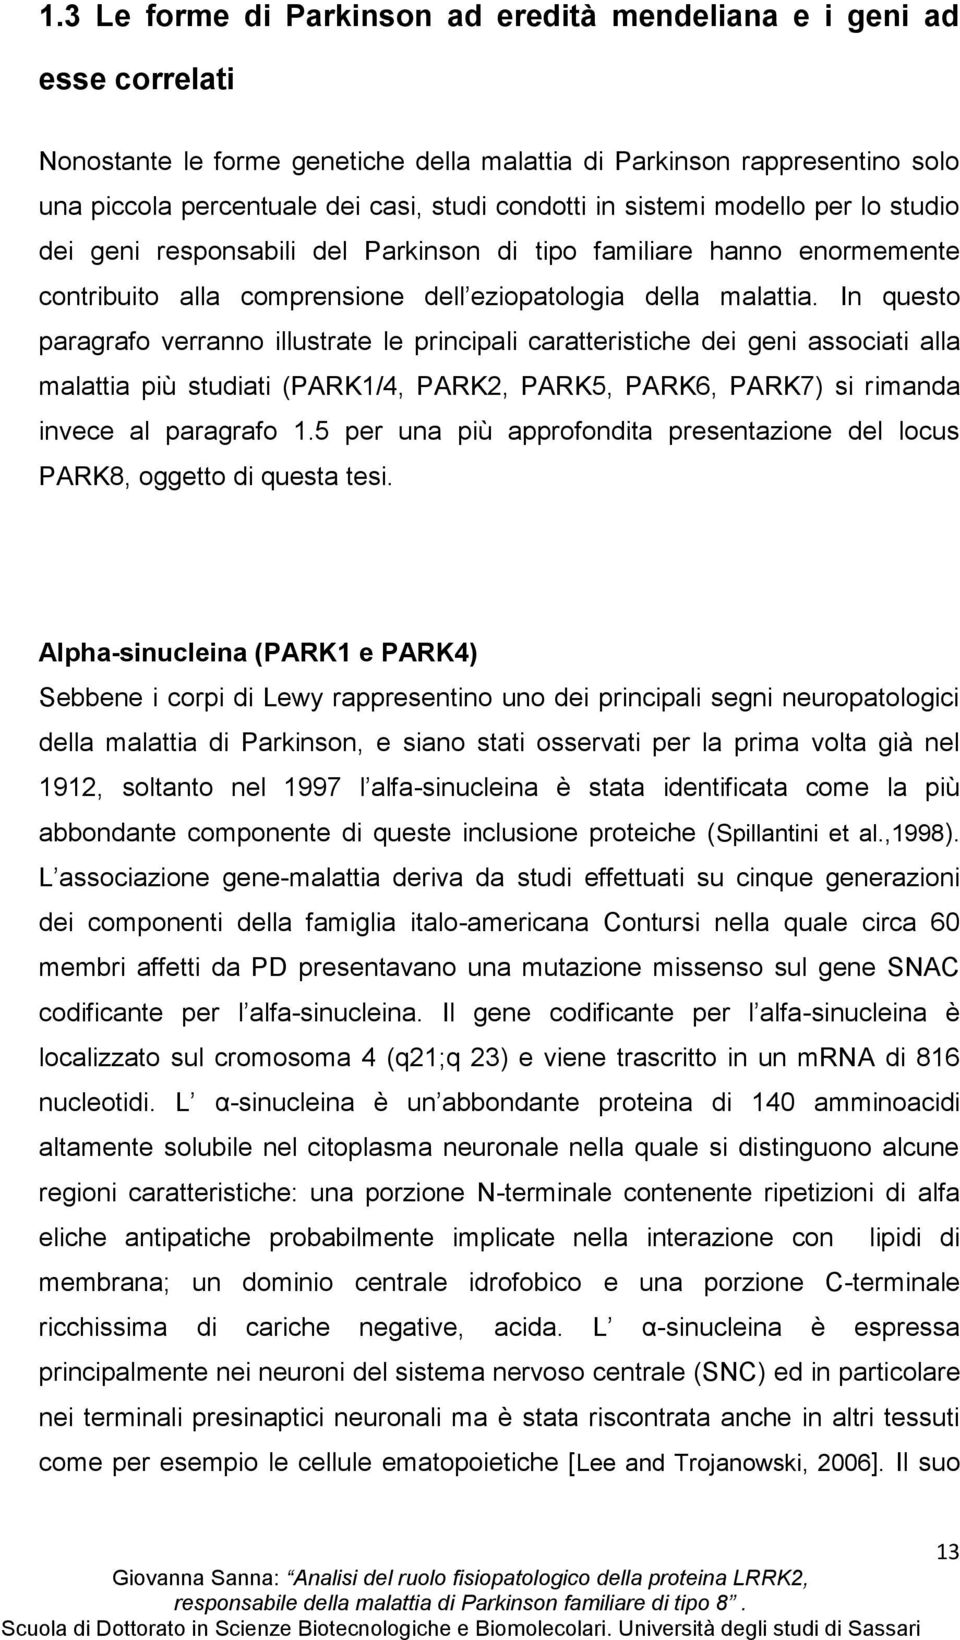 In questo paragrafo verranno illustrate le principali caratteristiche dei geni associati alla malattia più studiati (PARK1/4, PARK2, PARK5, PARK6, PARK7) si rimanda invece al paragrafo 1.